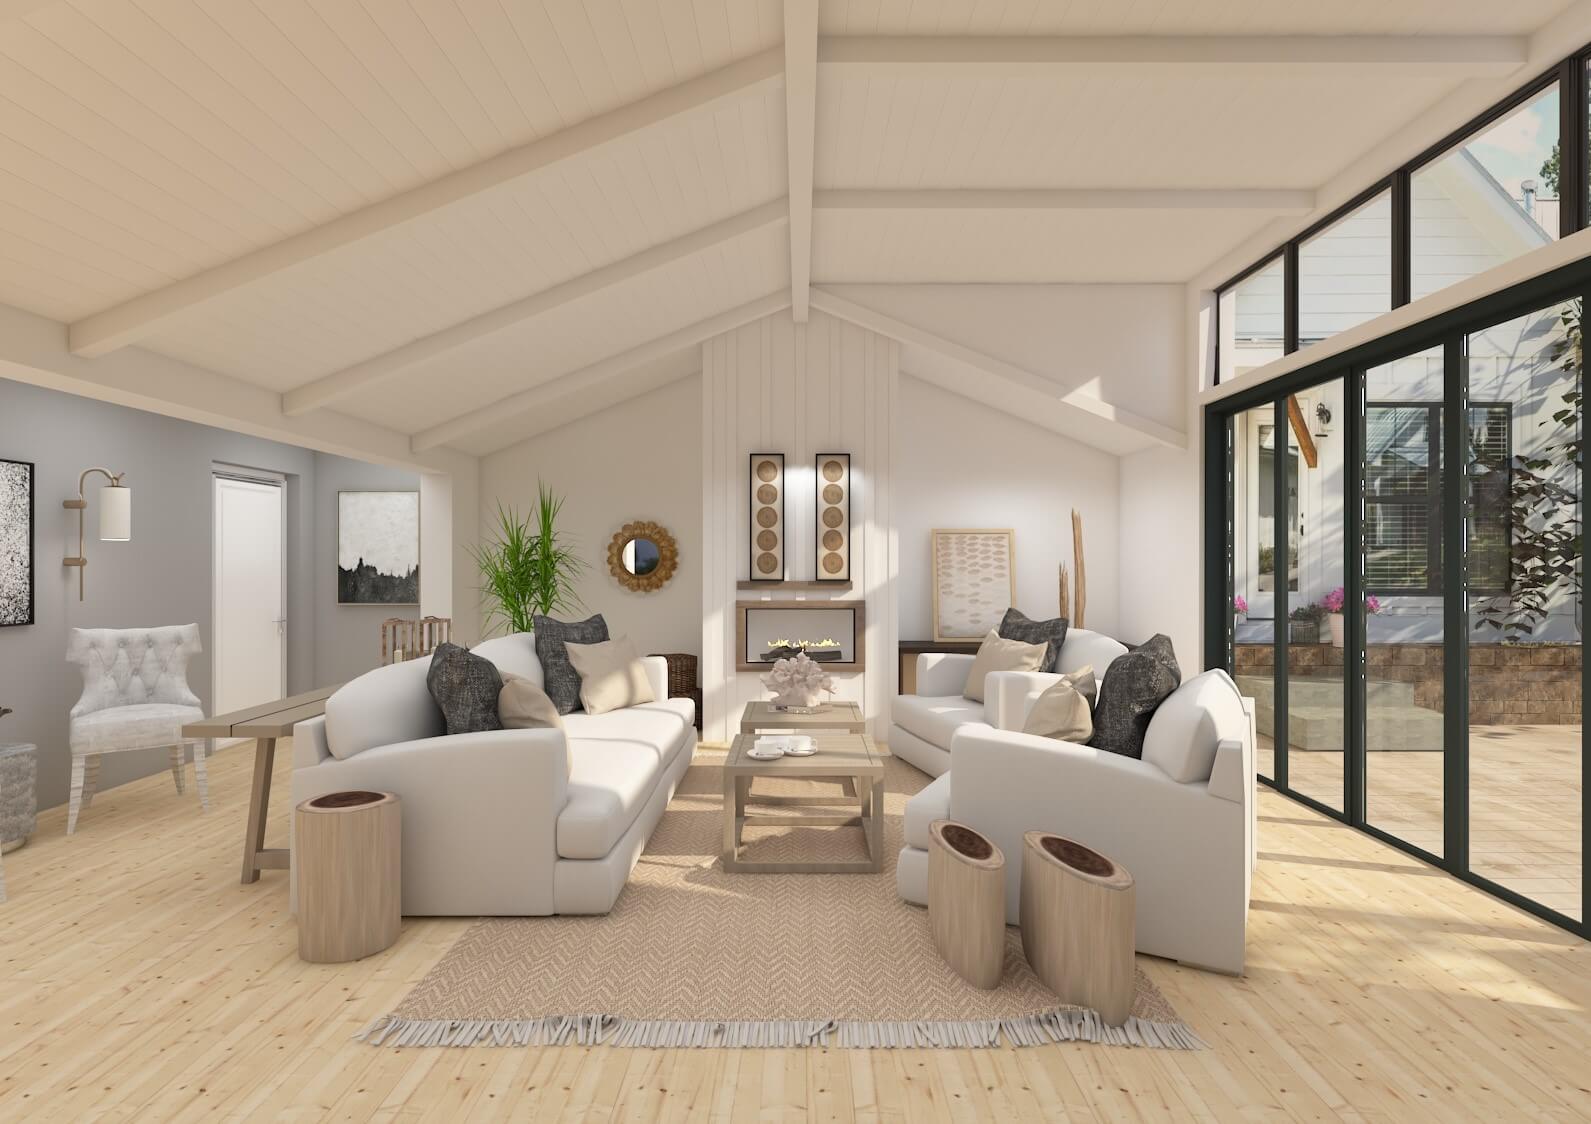 10 Best Contemporary Interior Design Ideas for Your Home   Foyr